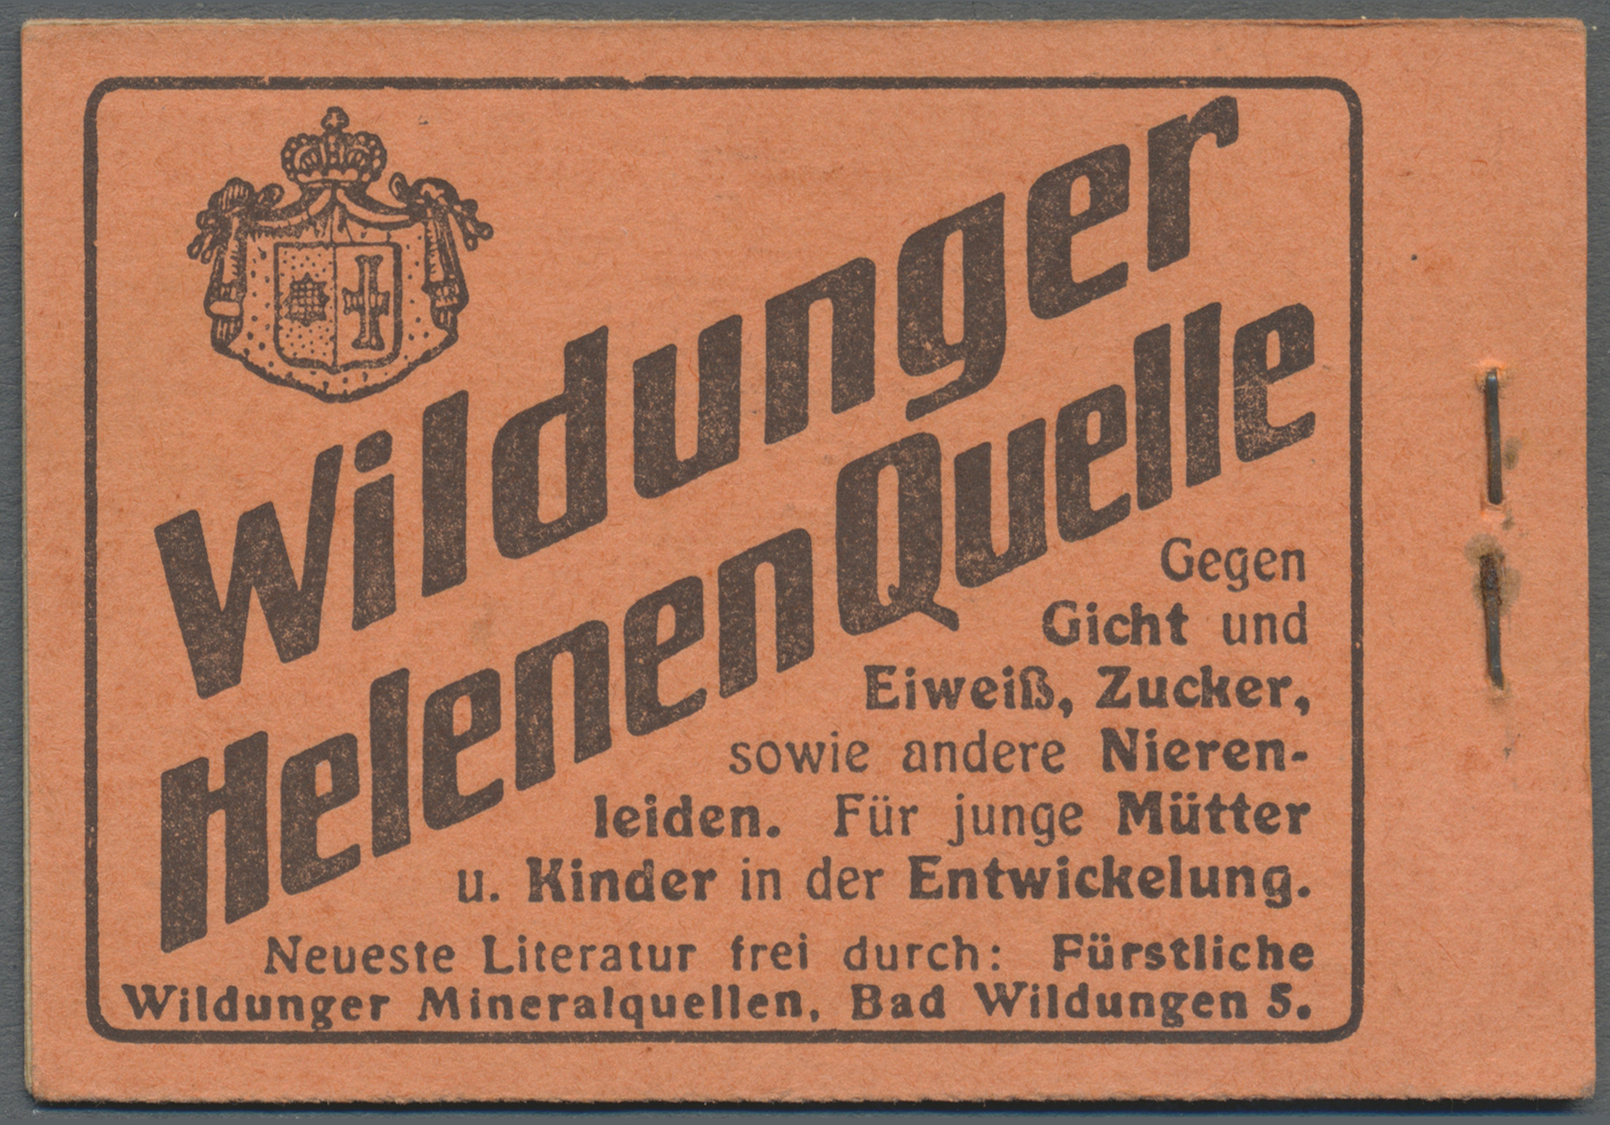 ** Deutsches Reich - Markenheftchen: 1914. Germania 2 Mark, ONr.14, Nur 1 H.-Blatt 9 I Dgz (postfrisch) - Postzegelboekjes